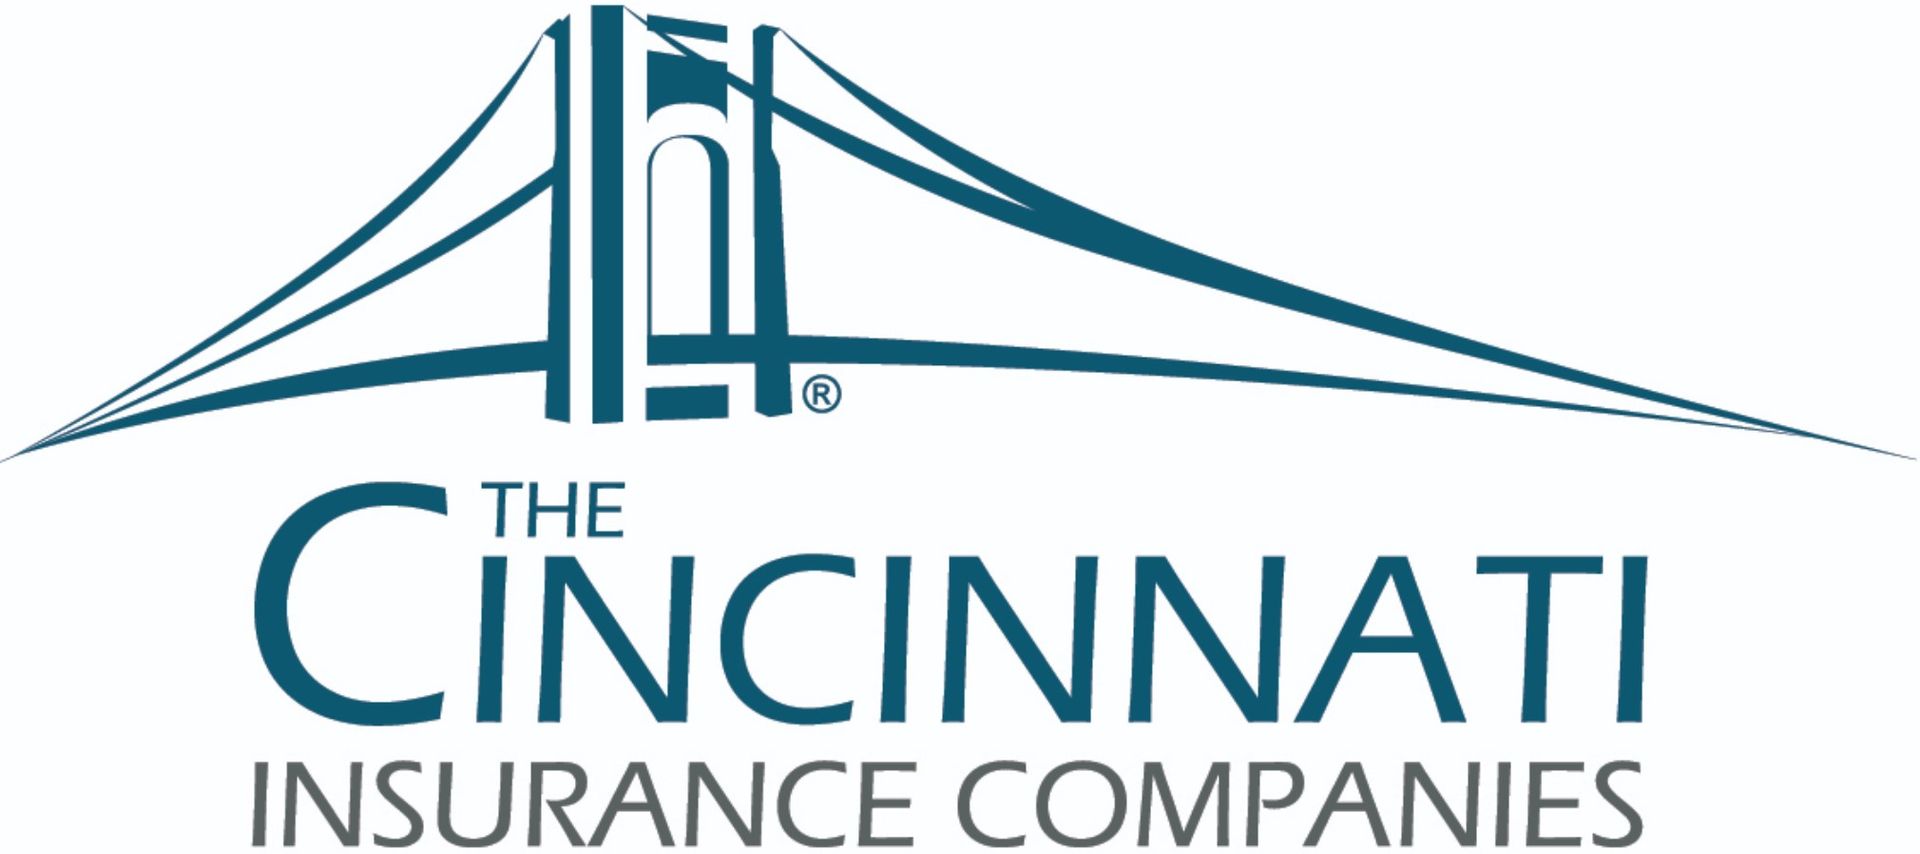 the cincinnati insurance companies logo has a bridge on it .